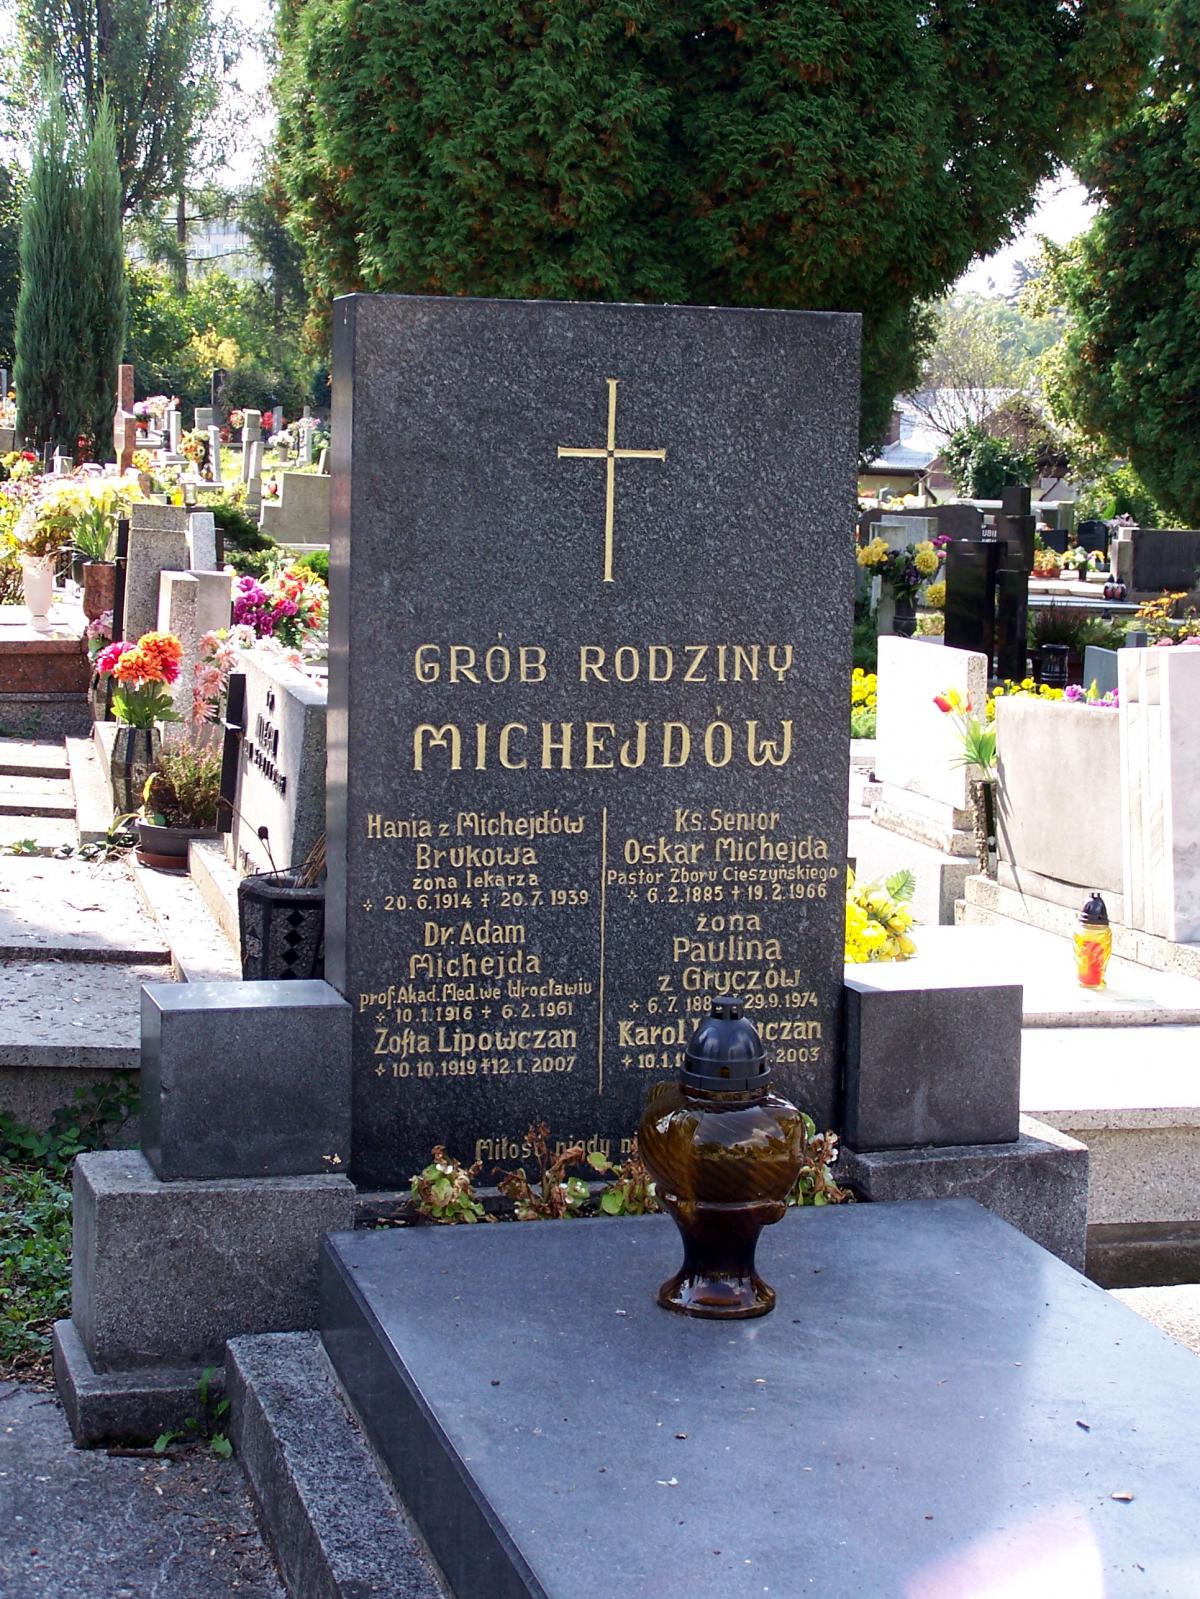 Wikipedia, 2009 in Cieszyn, Graves in Cieszyn, Lutheran Cemetery in Cieszyn, Michejda (surname), Sel